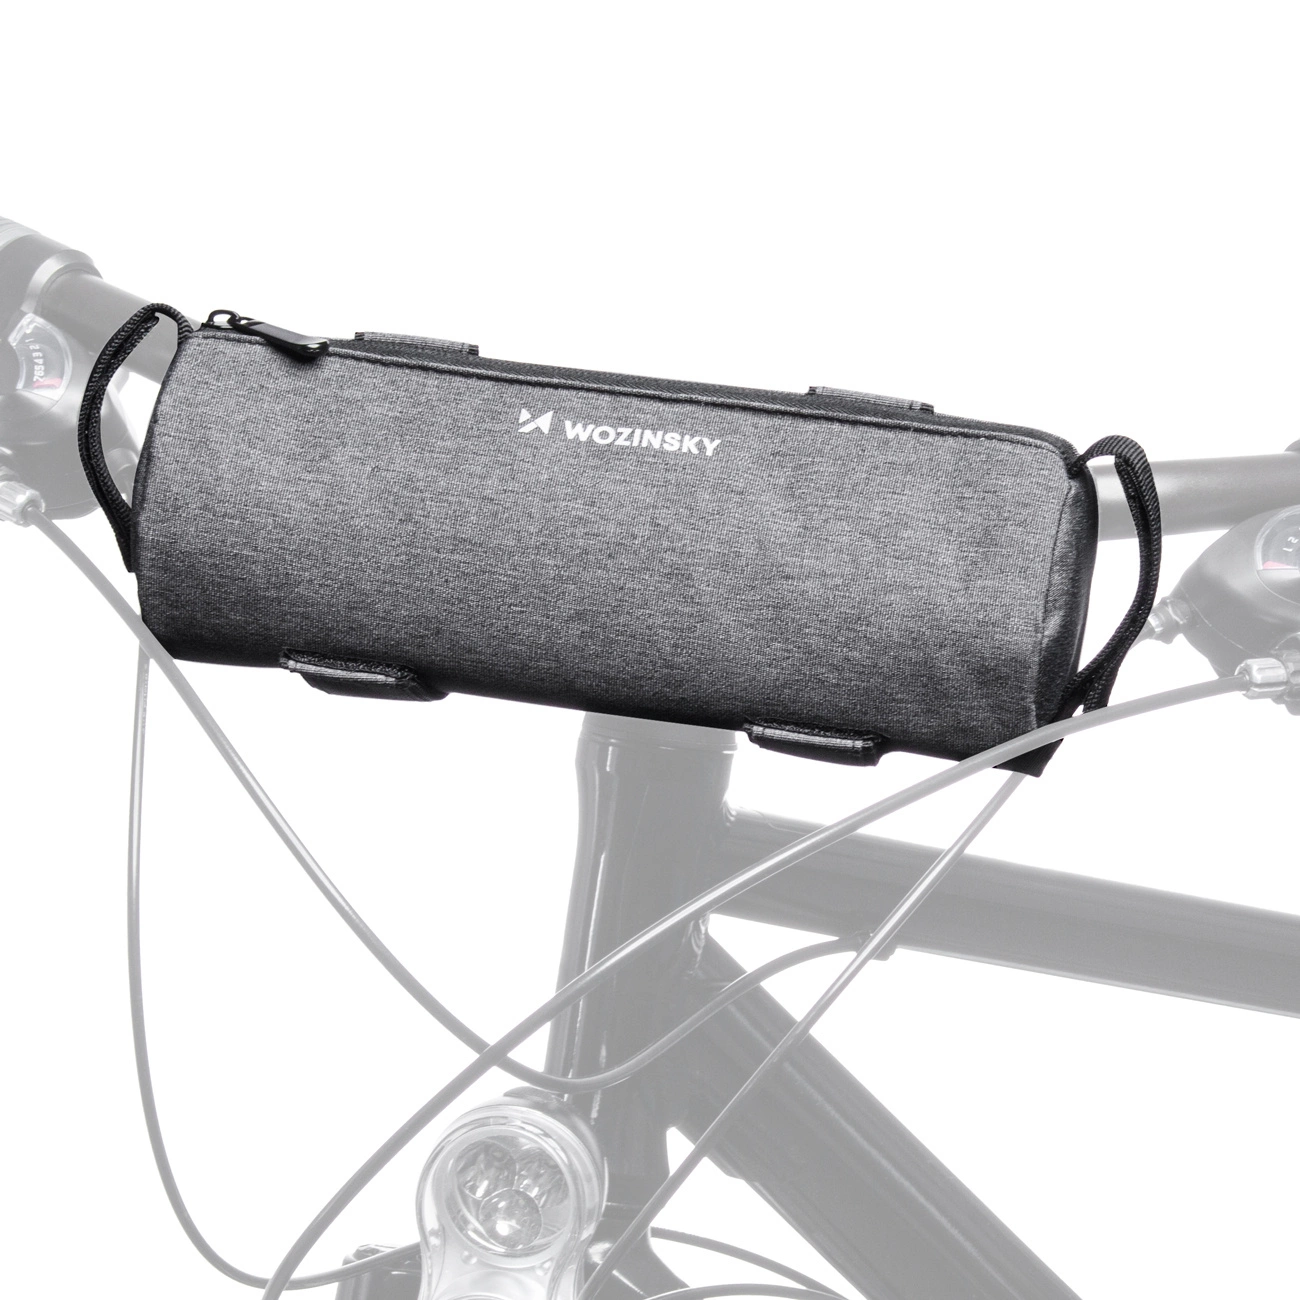 Wozinsky kerékpáros biciklis termo táska szürke